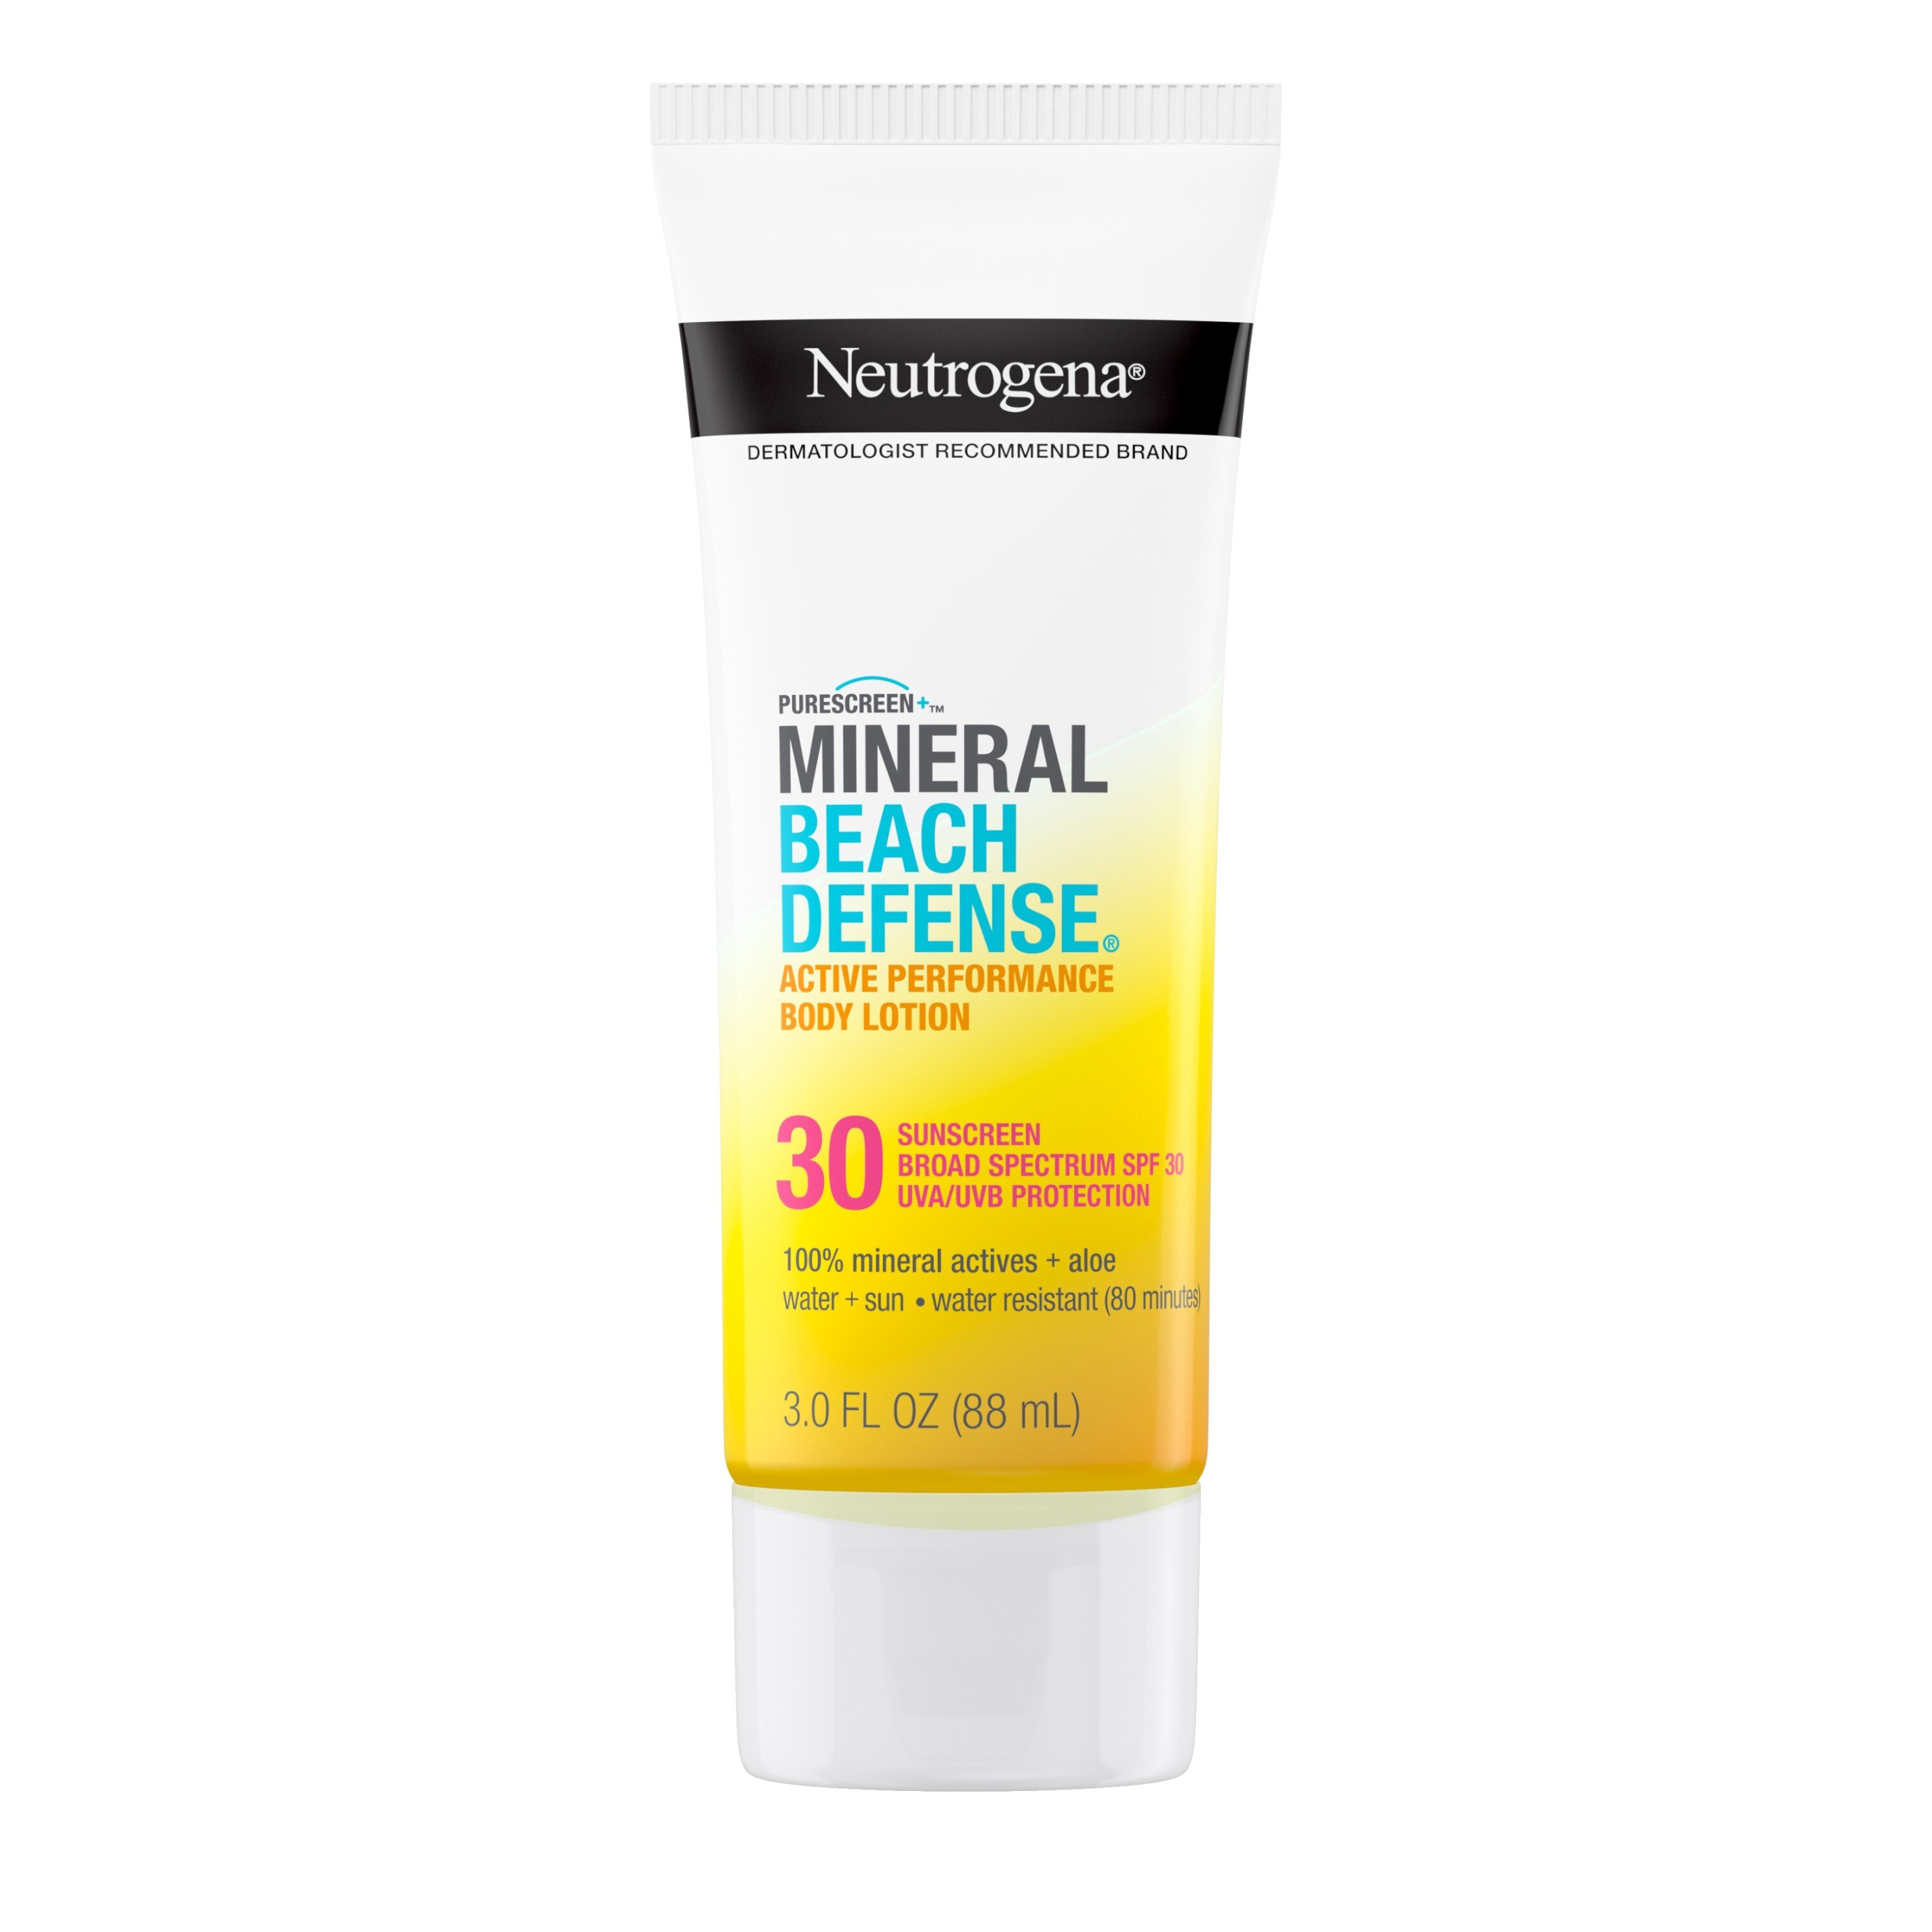 Neutrogena Purescreen+ Mineral Beach Defense Sunscreen, SPF 30